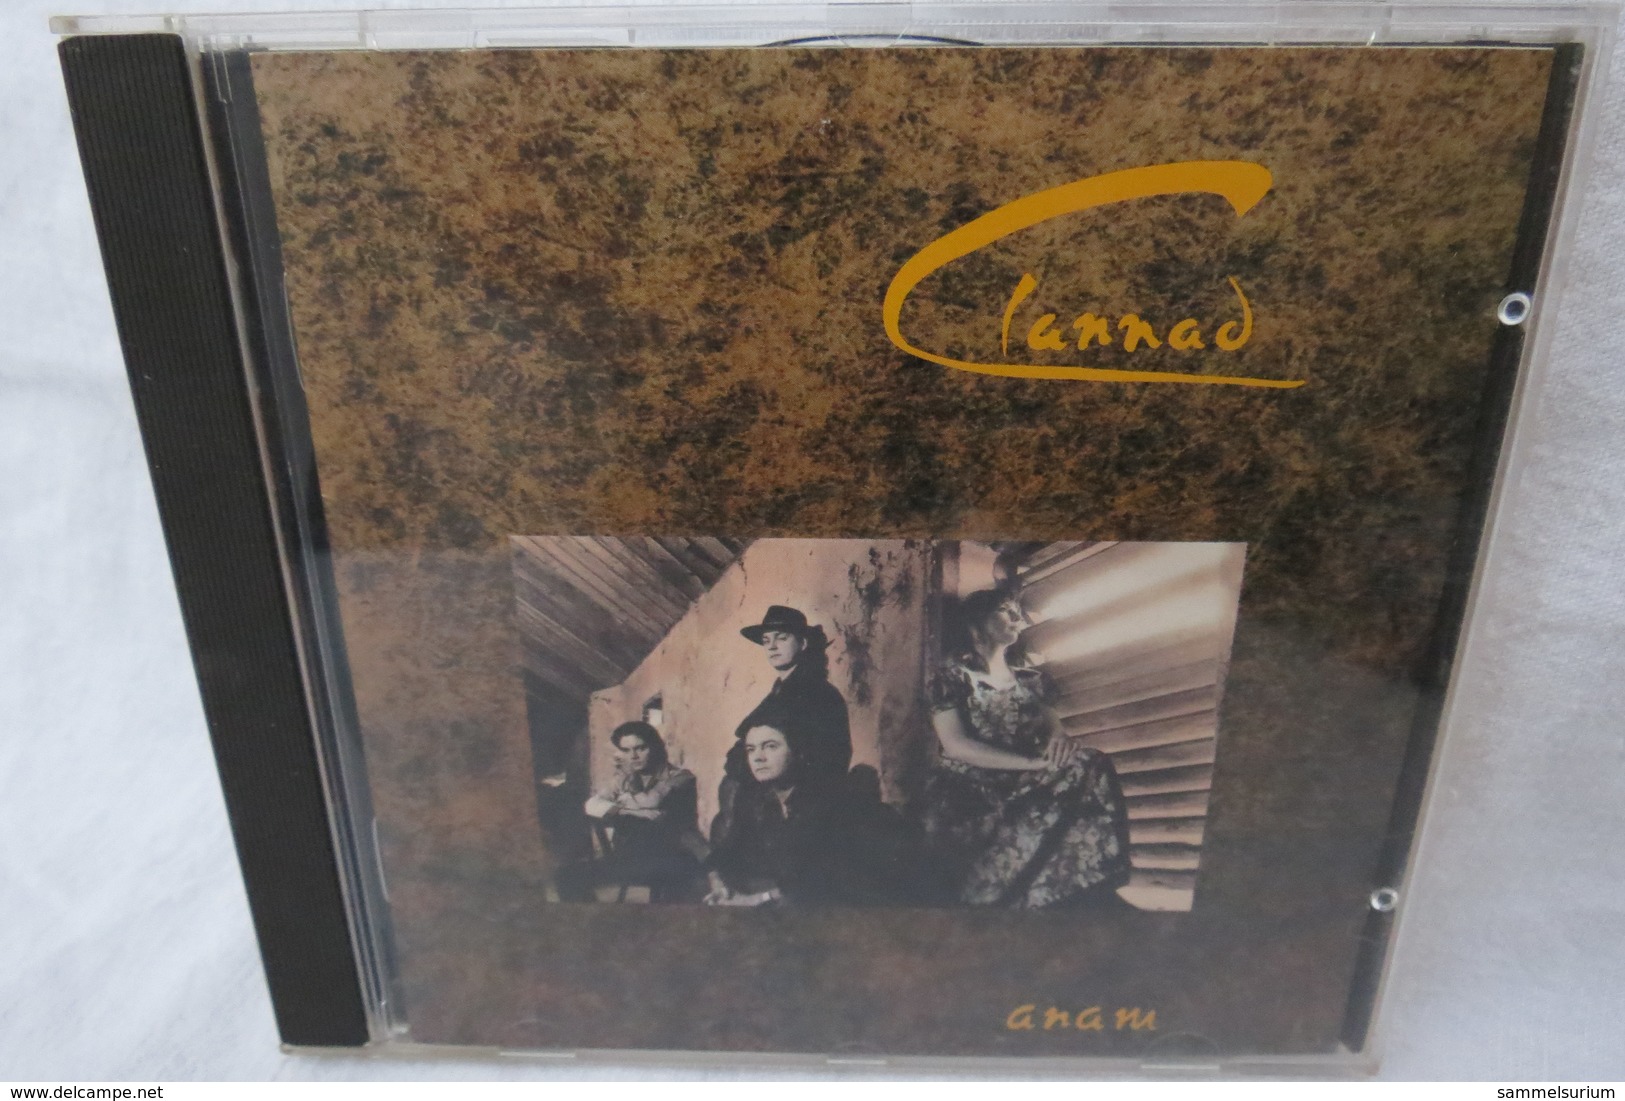 CD "Clannad" Anam - Rock